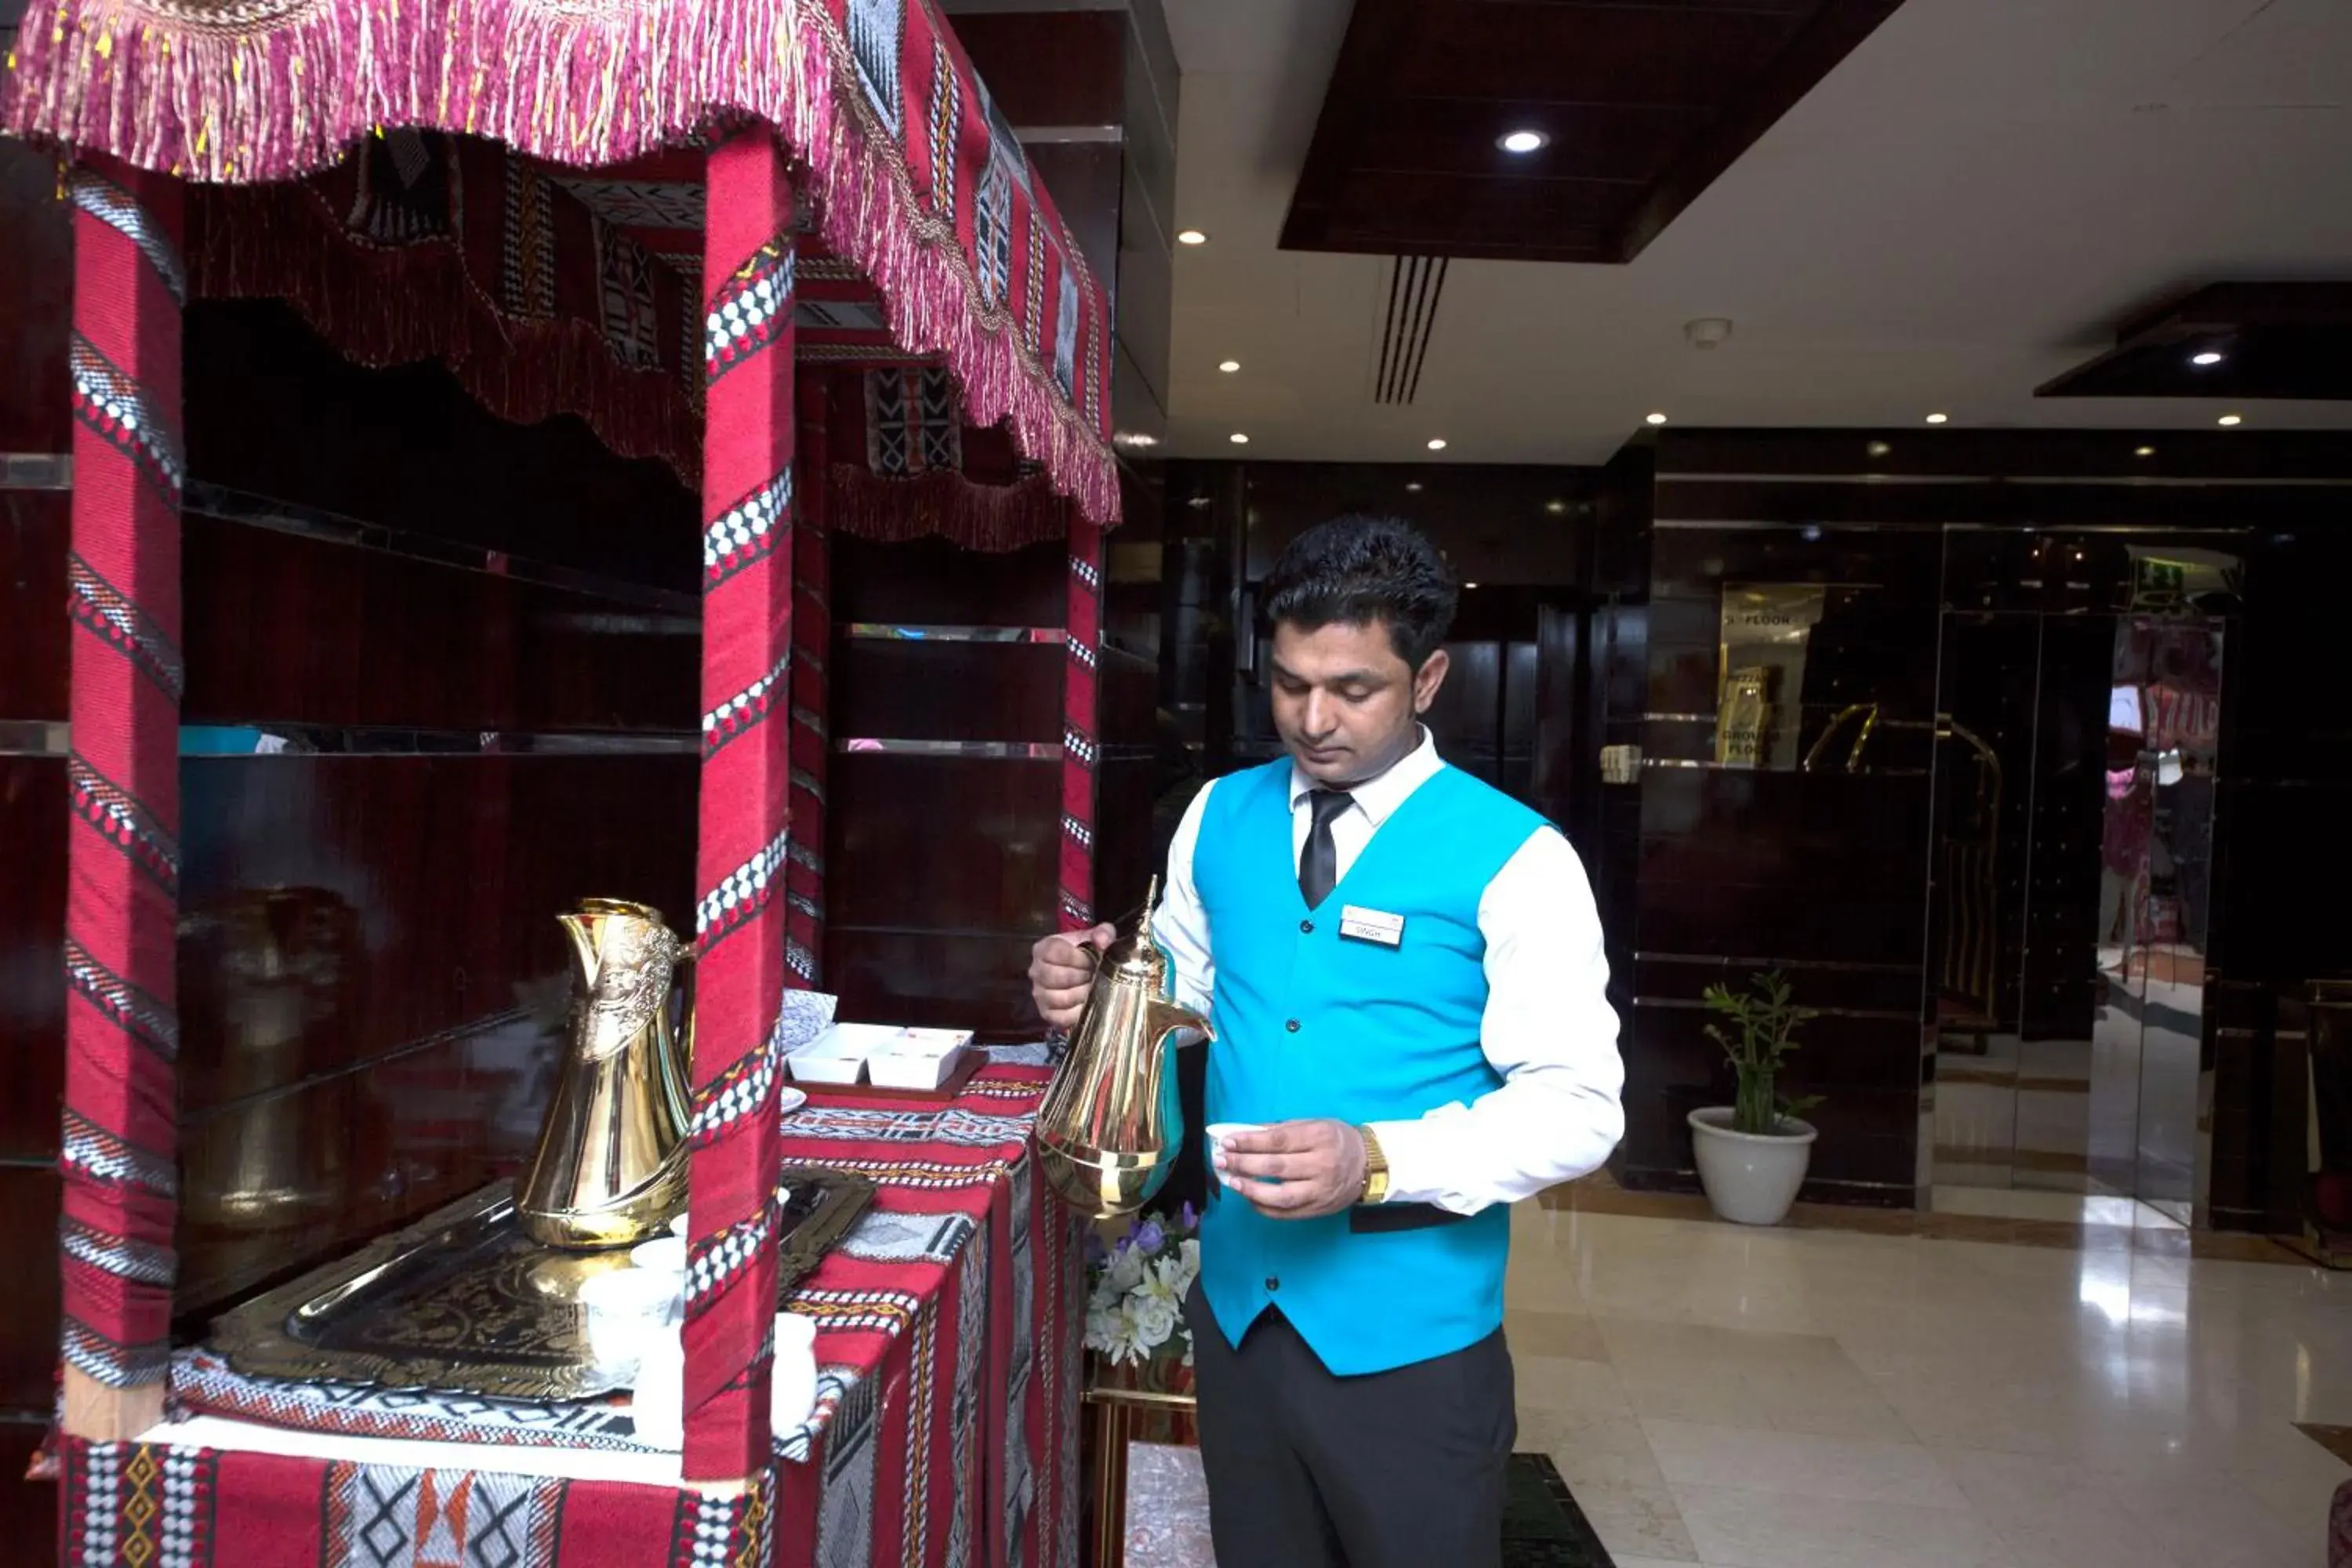 Lobby or reception in Al Khaleej Grand Hotel